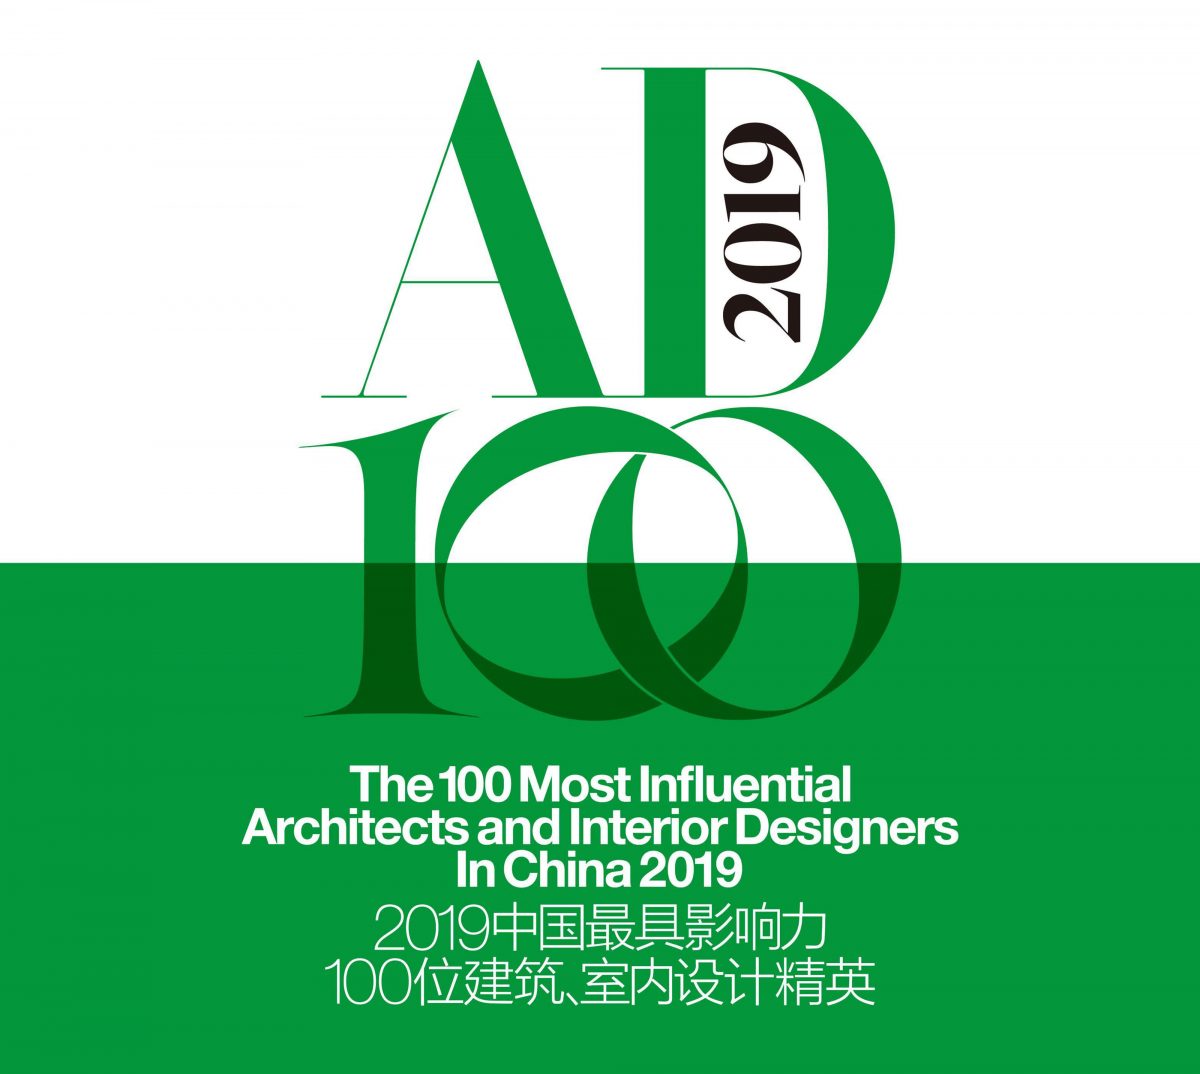 2019 AD100 中国最具影响力100位建筑与室内设计精英榜单